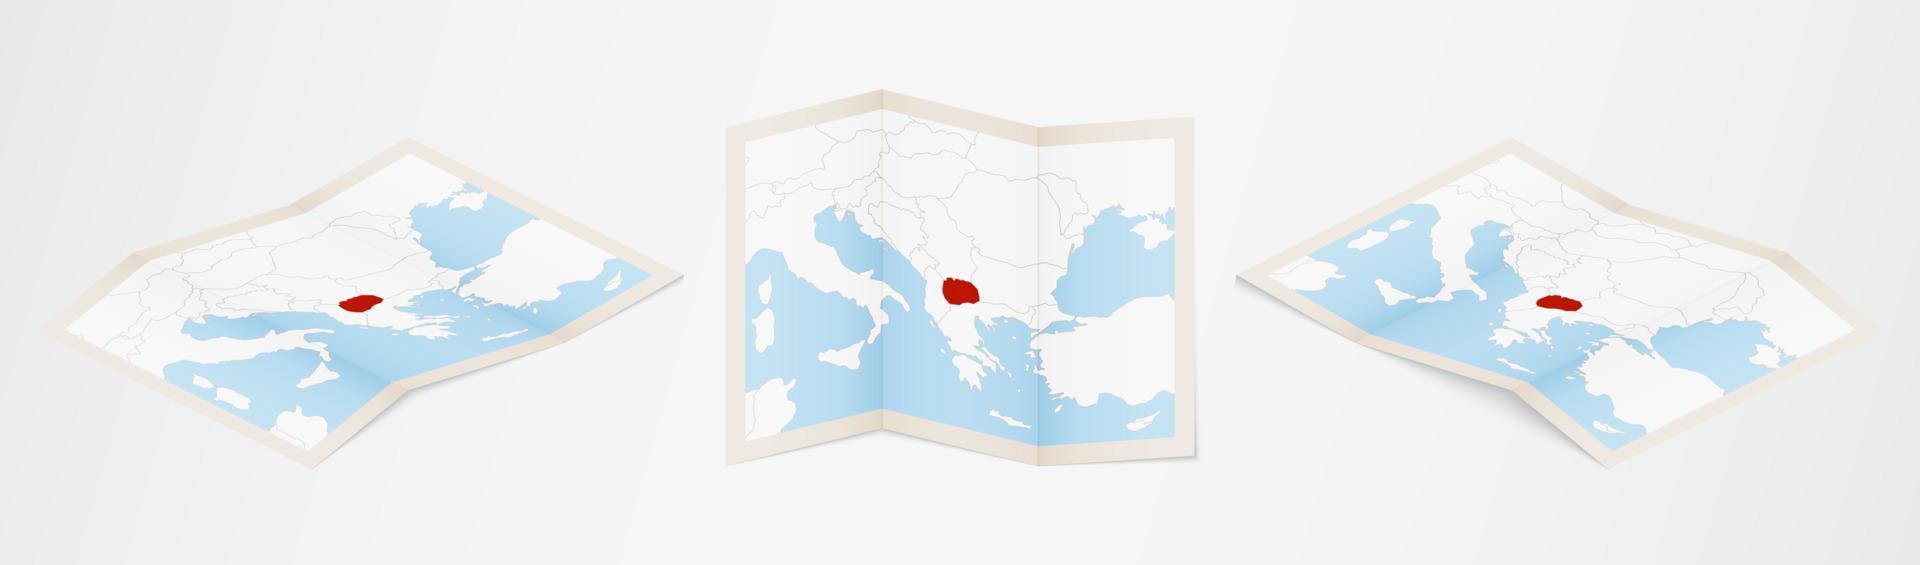 mapa dobrado da macedônia em três versões diferentes. vetor